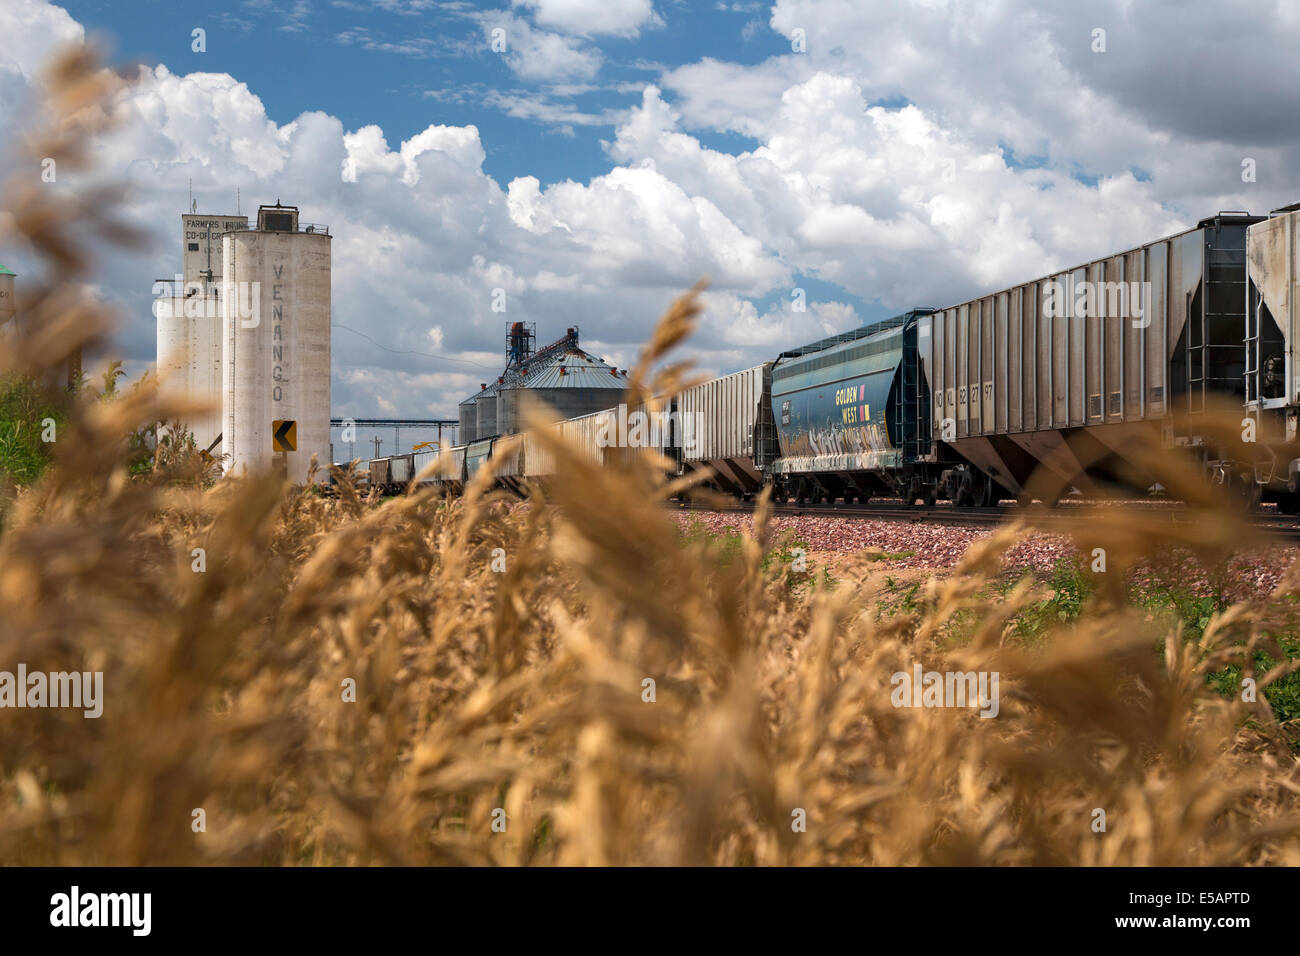 Venango, Nebraska - Getreidesilos und eine Eisenbahn in den Weizen Anbaugebiet der westlichen Nebraska. Stockfoto